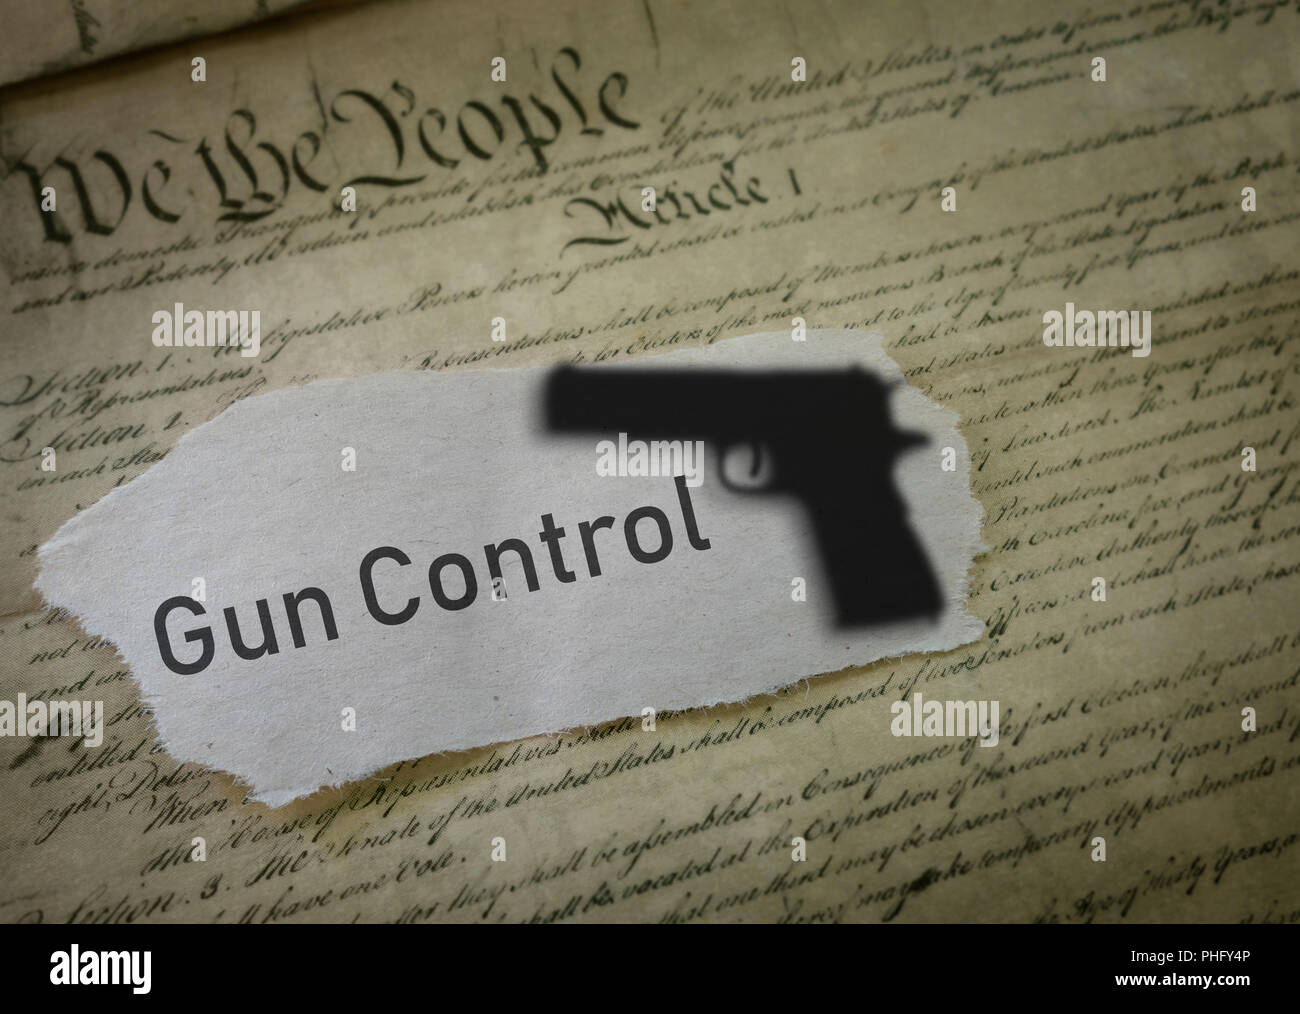 Gun control concept Stock Photo